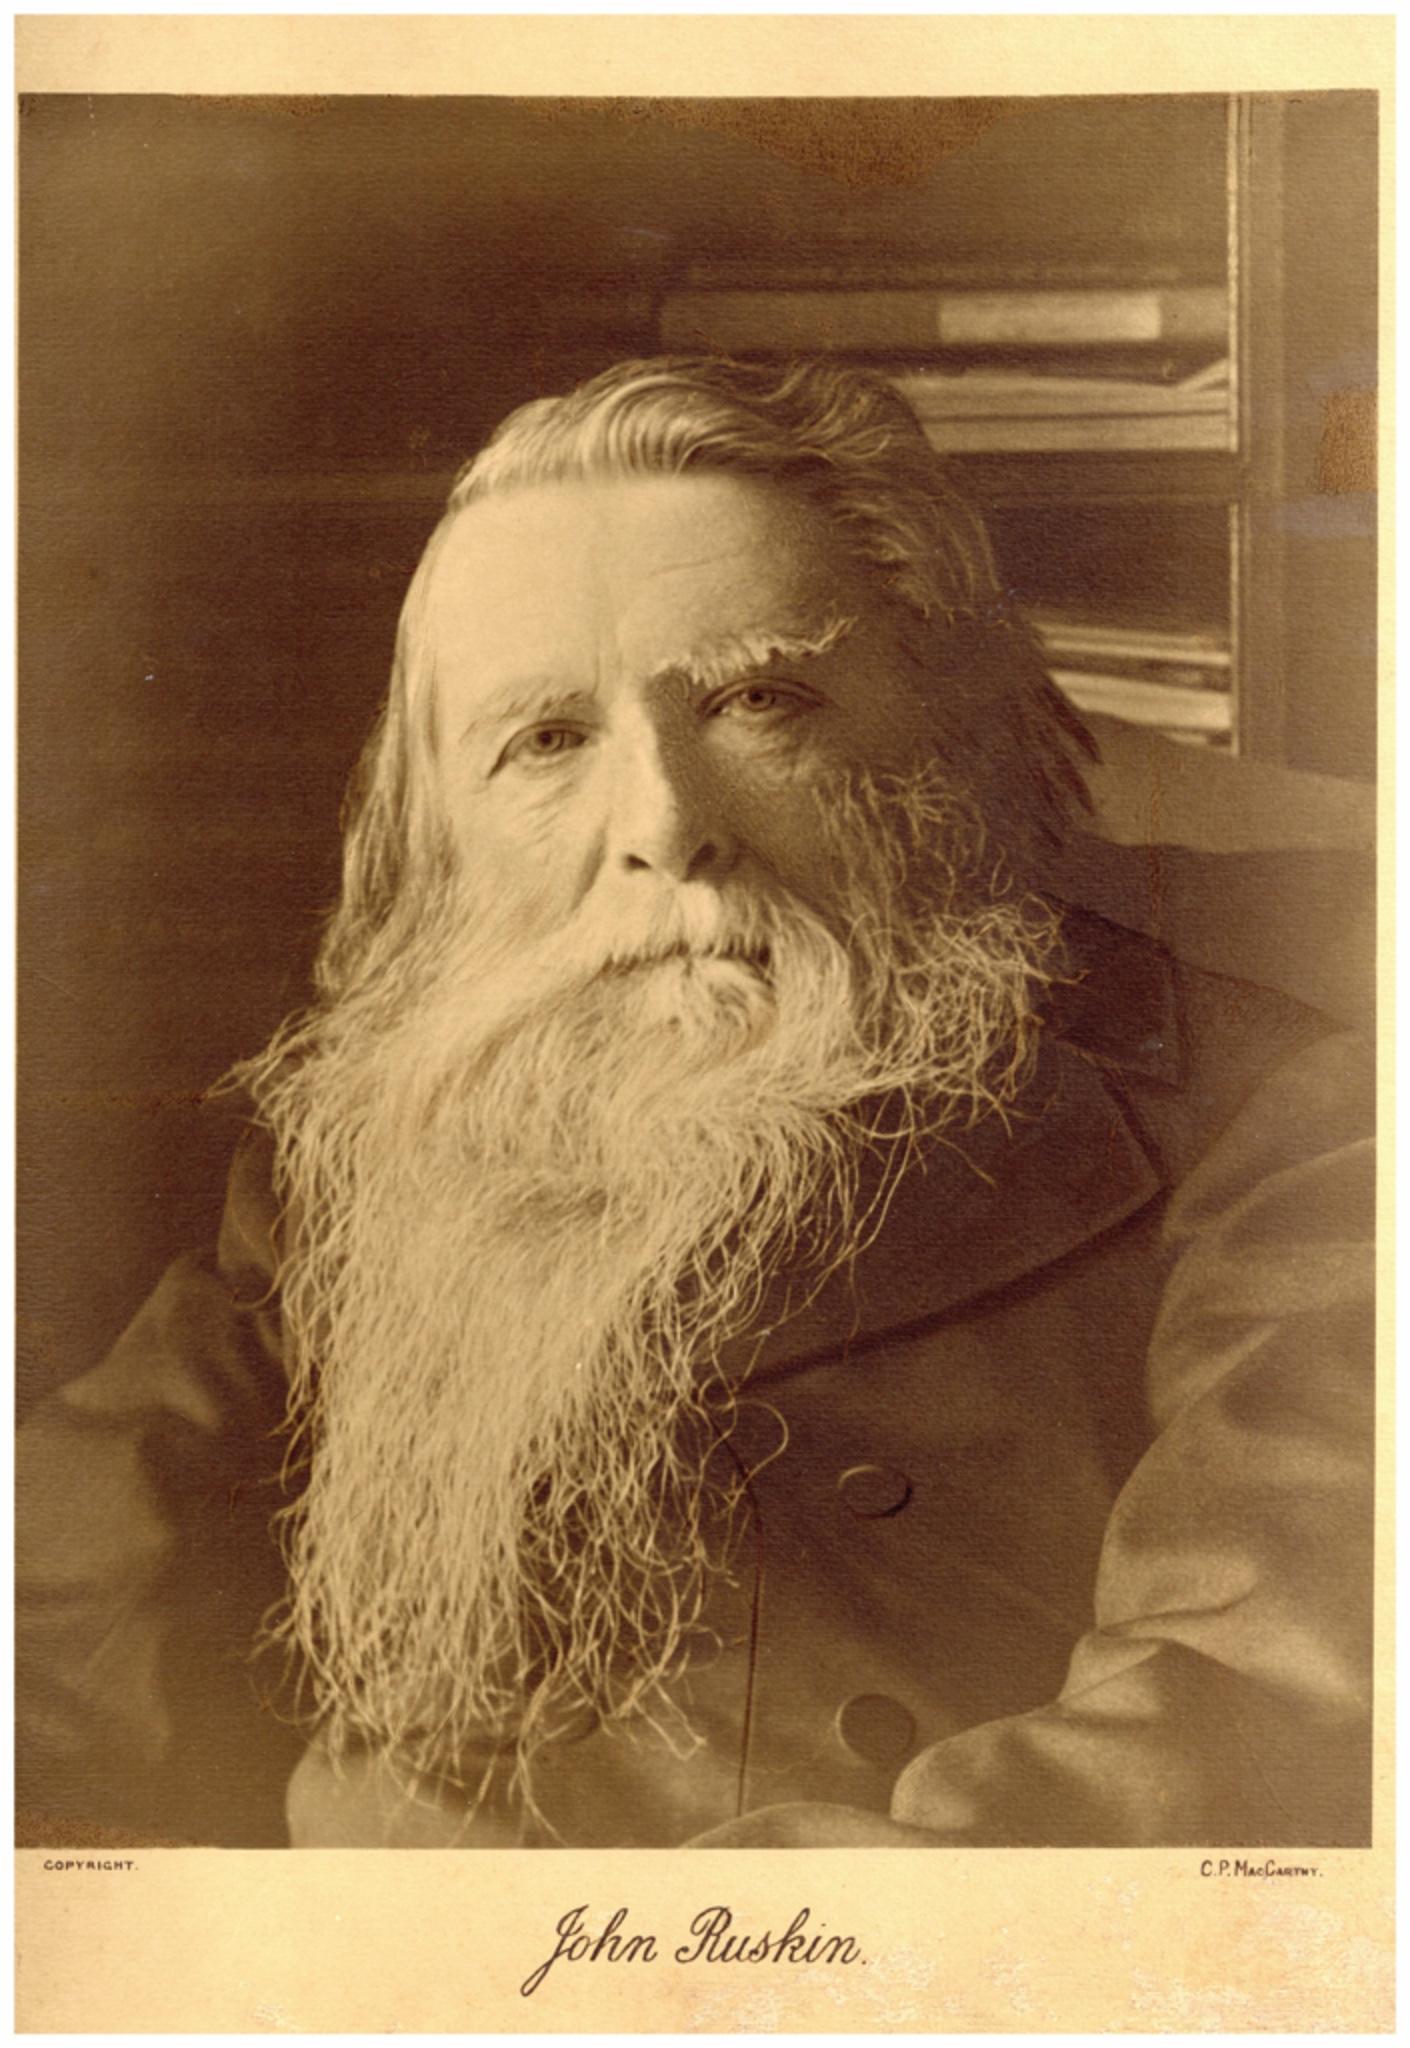 Das Porträt von John Ruskin von Charles Philip McCarthy ist eine Photogravüre aus dem Jahr 1890.

Druck auf hochwertigem Baumwollpapier im Großformat mit Platin-Tonungseffekt.

Unterschrift des Fotografen und Copyright-Vermerke am unteren Rand der